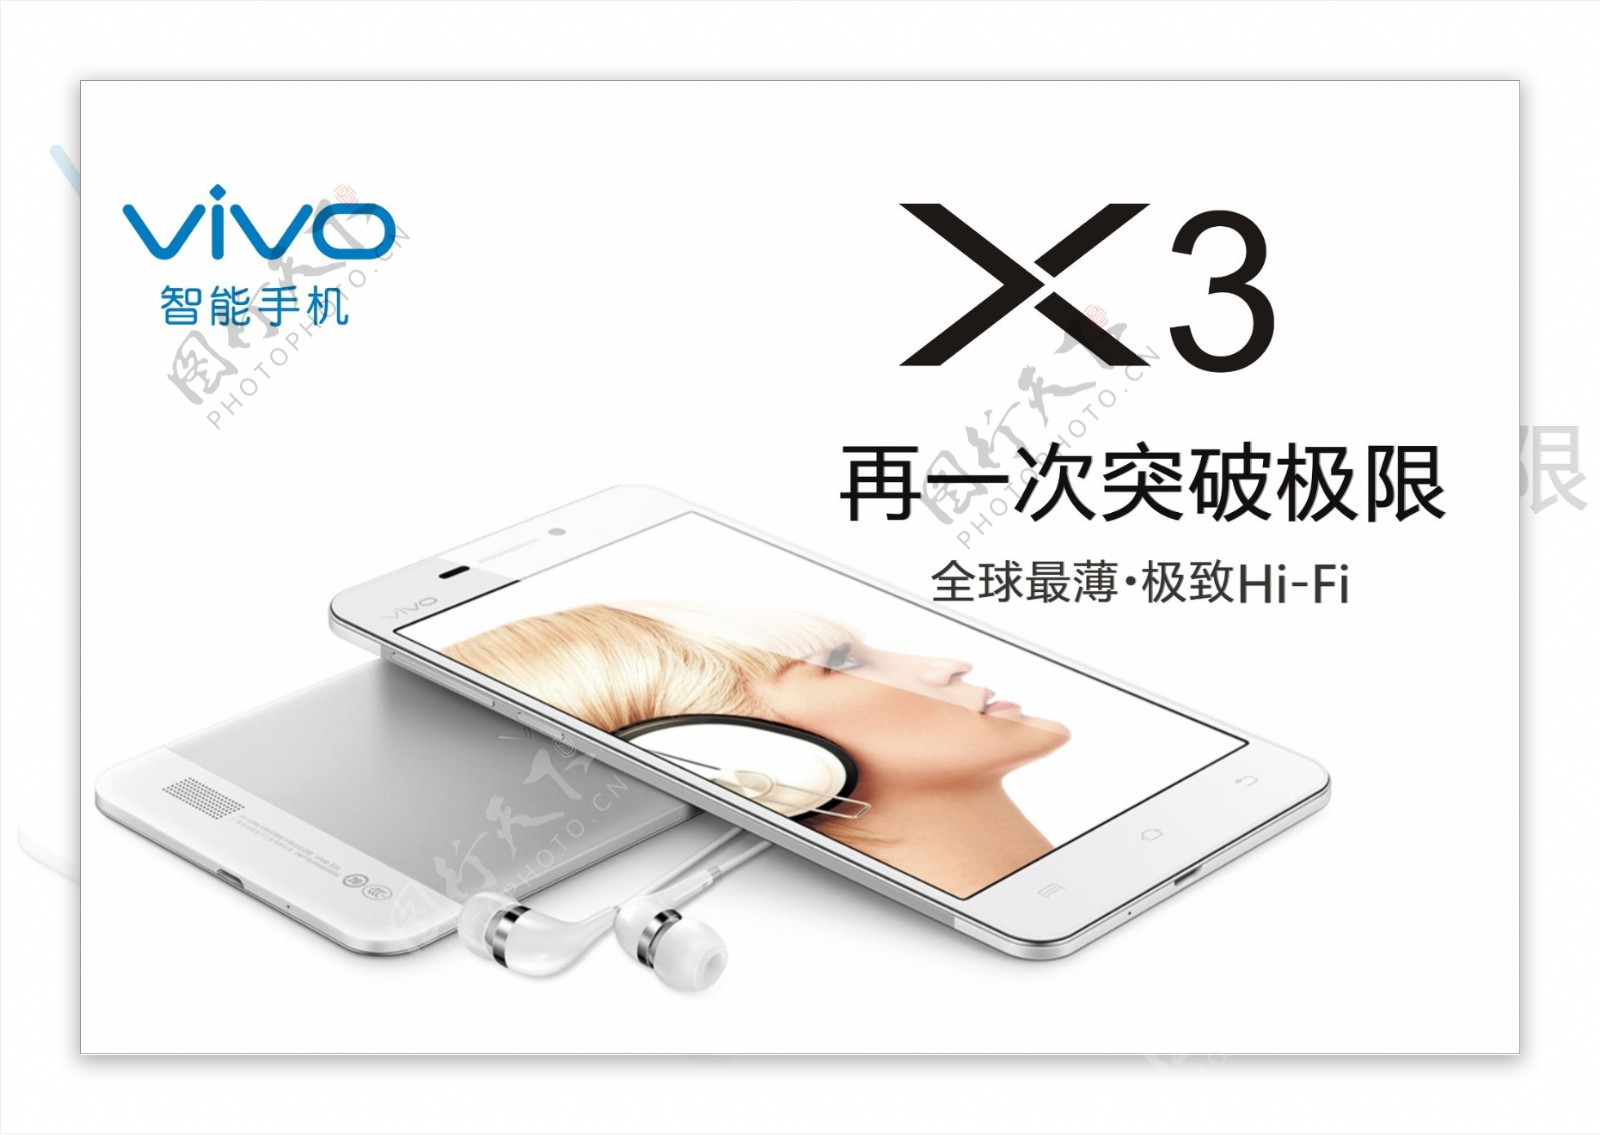 vivox3手机